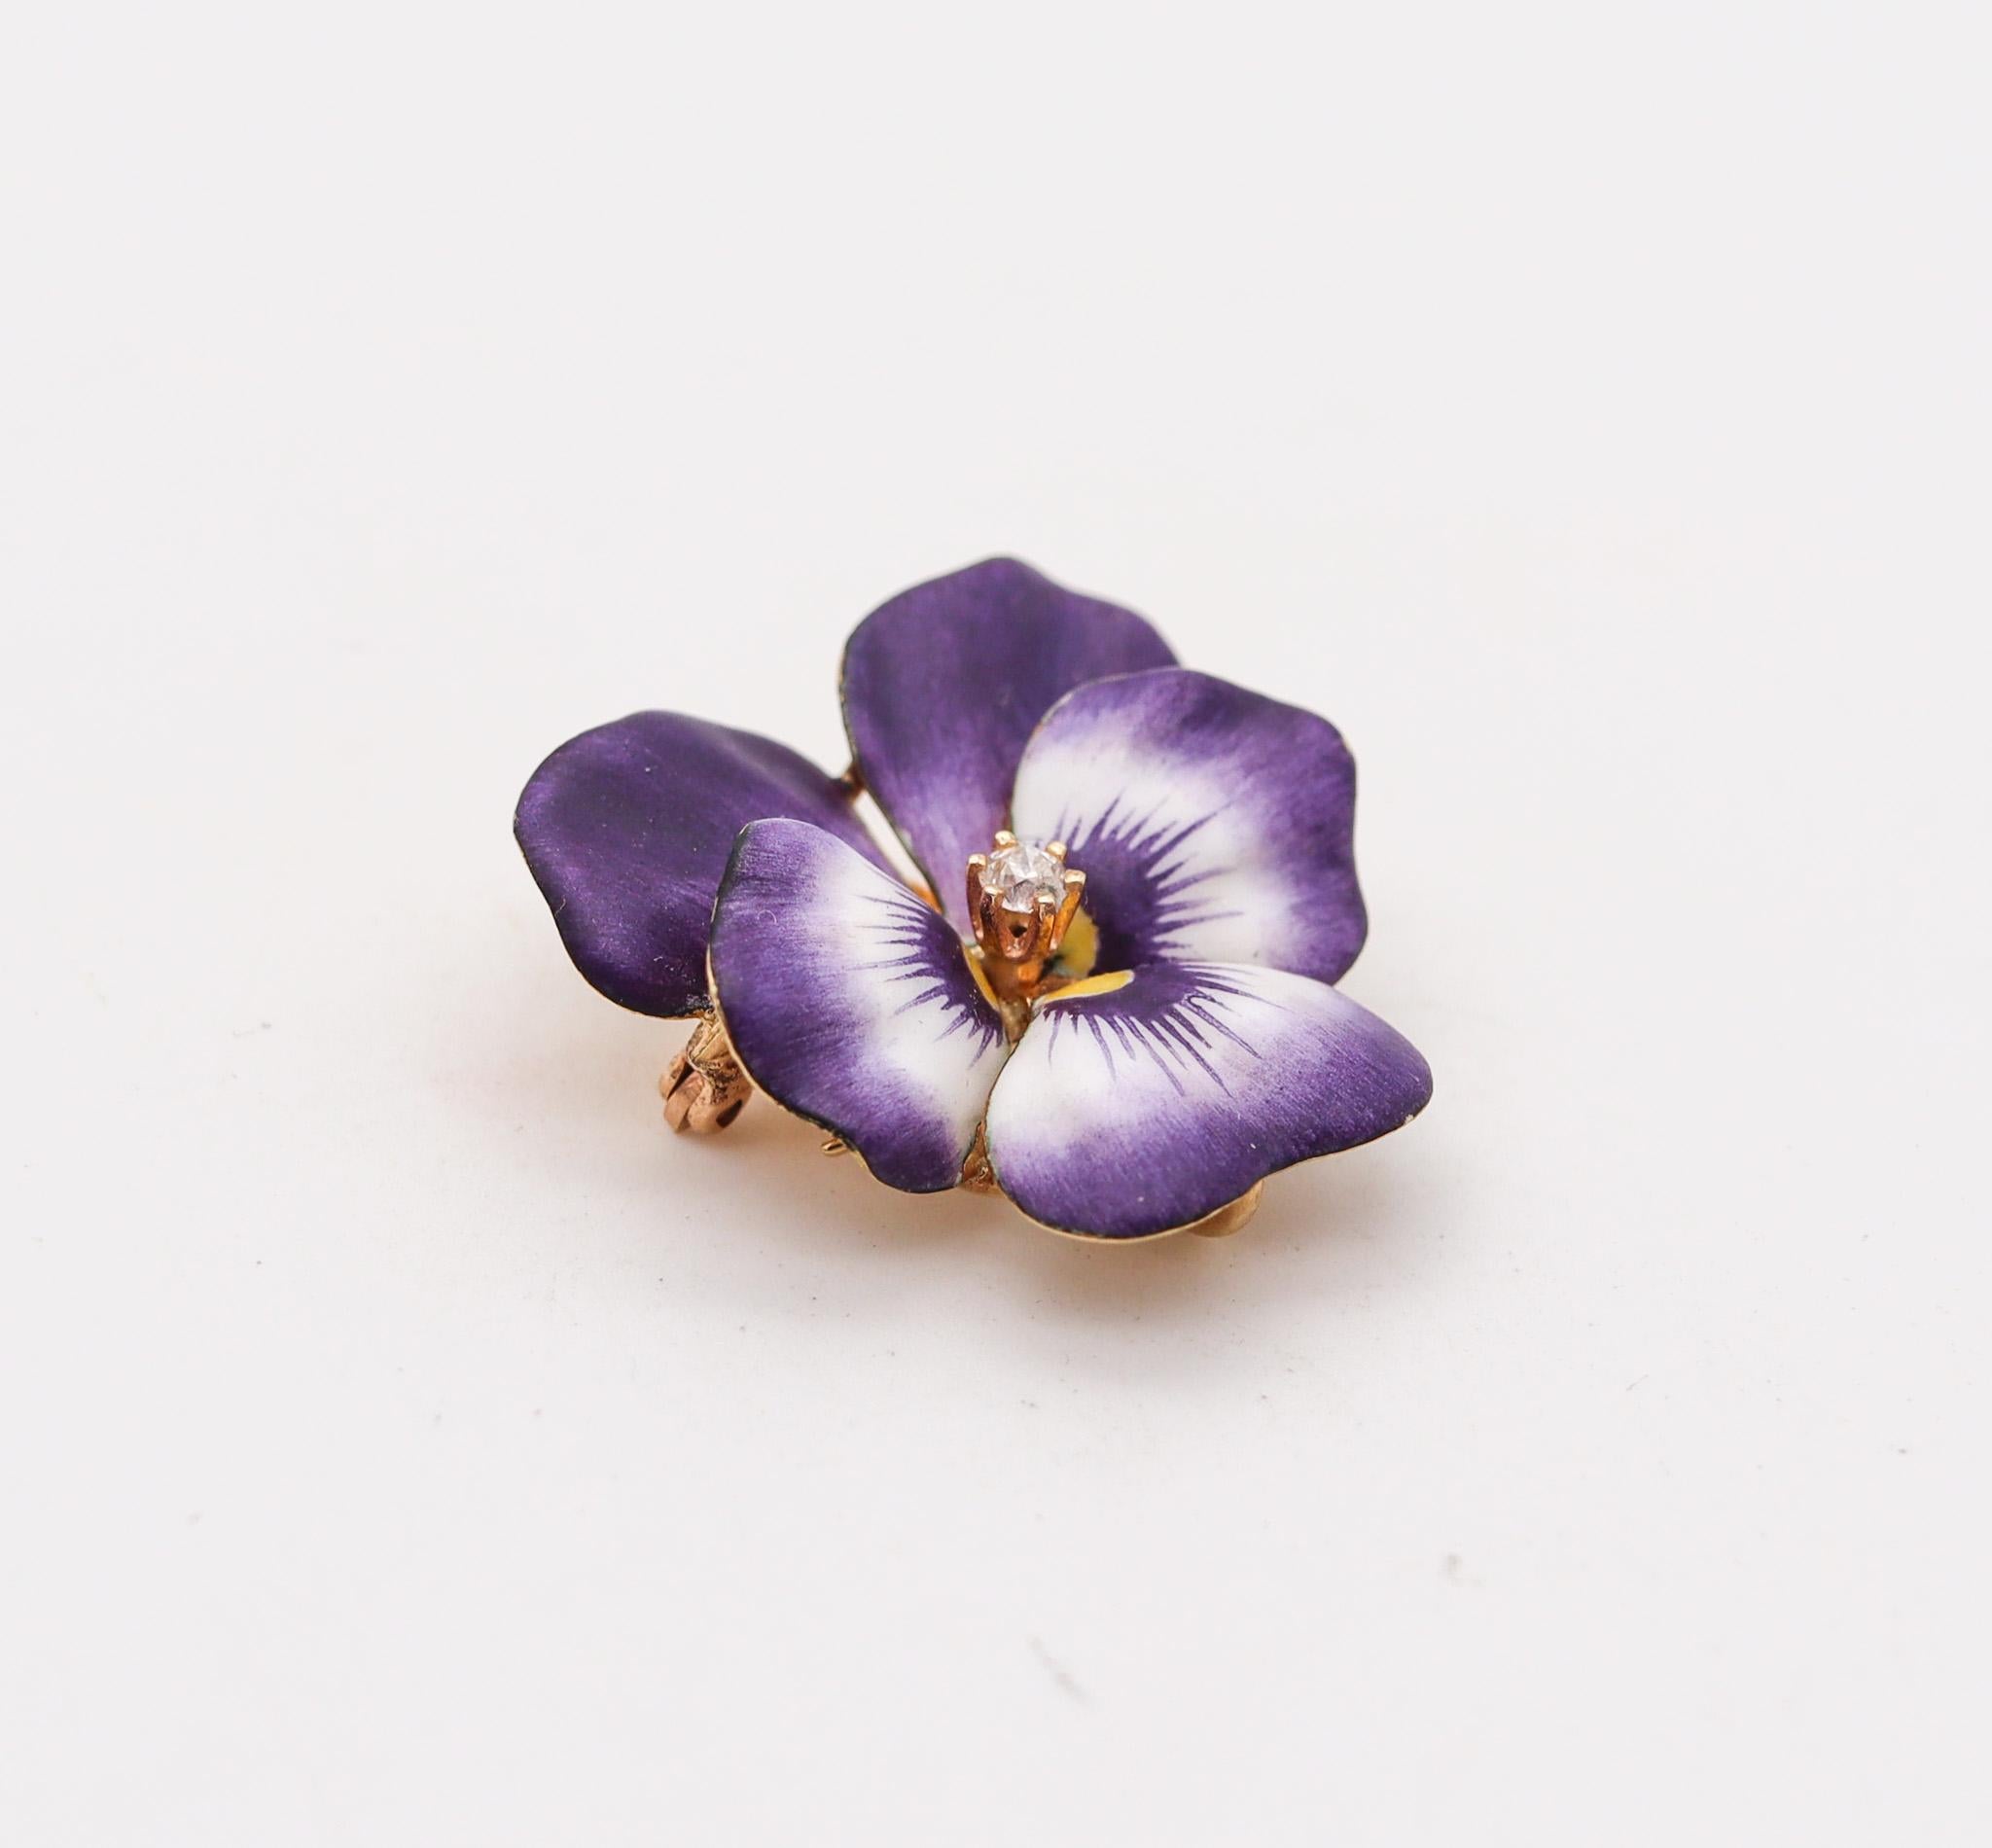 Pendentif-broche édouardien en forme de fleur de Pansy émaillée en violet.

Magnifique  Fleur de pensée, créée à Newark aux États-Unis pendant la période édouardienne et l'Art nouveau, dès les années 1900. Ce magnifique pendentif-broche convertible